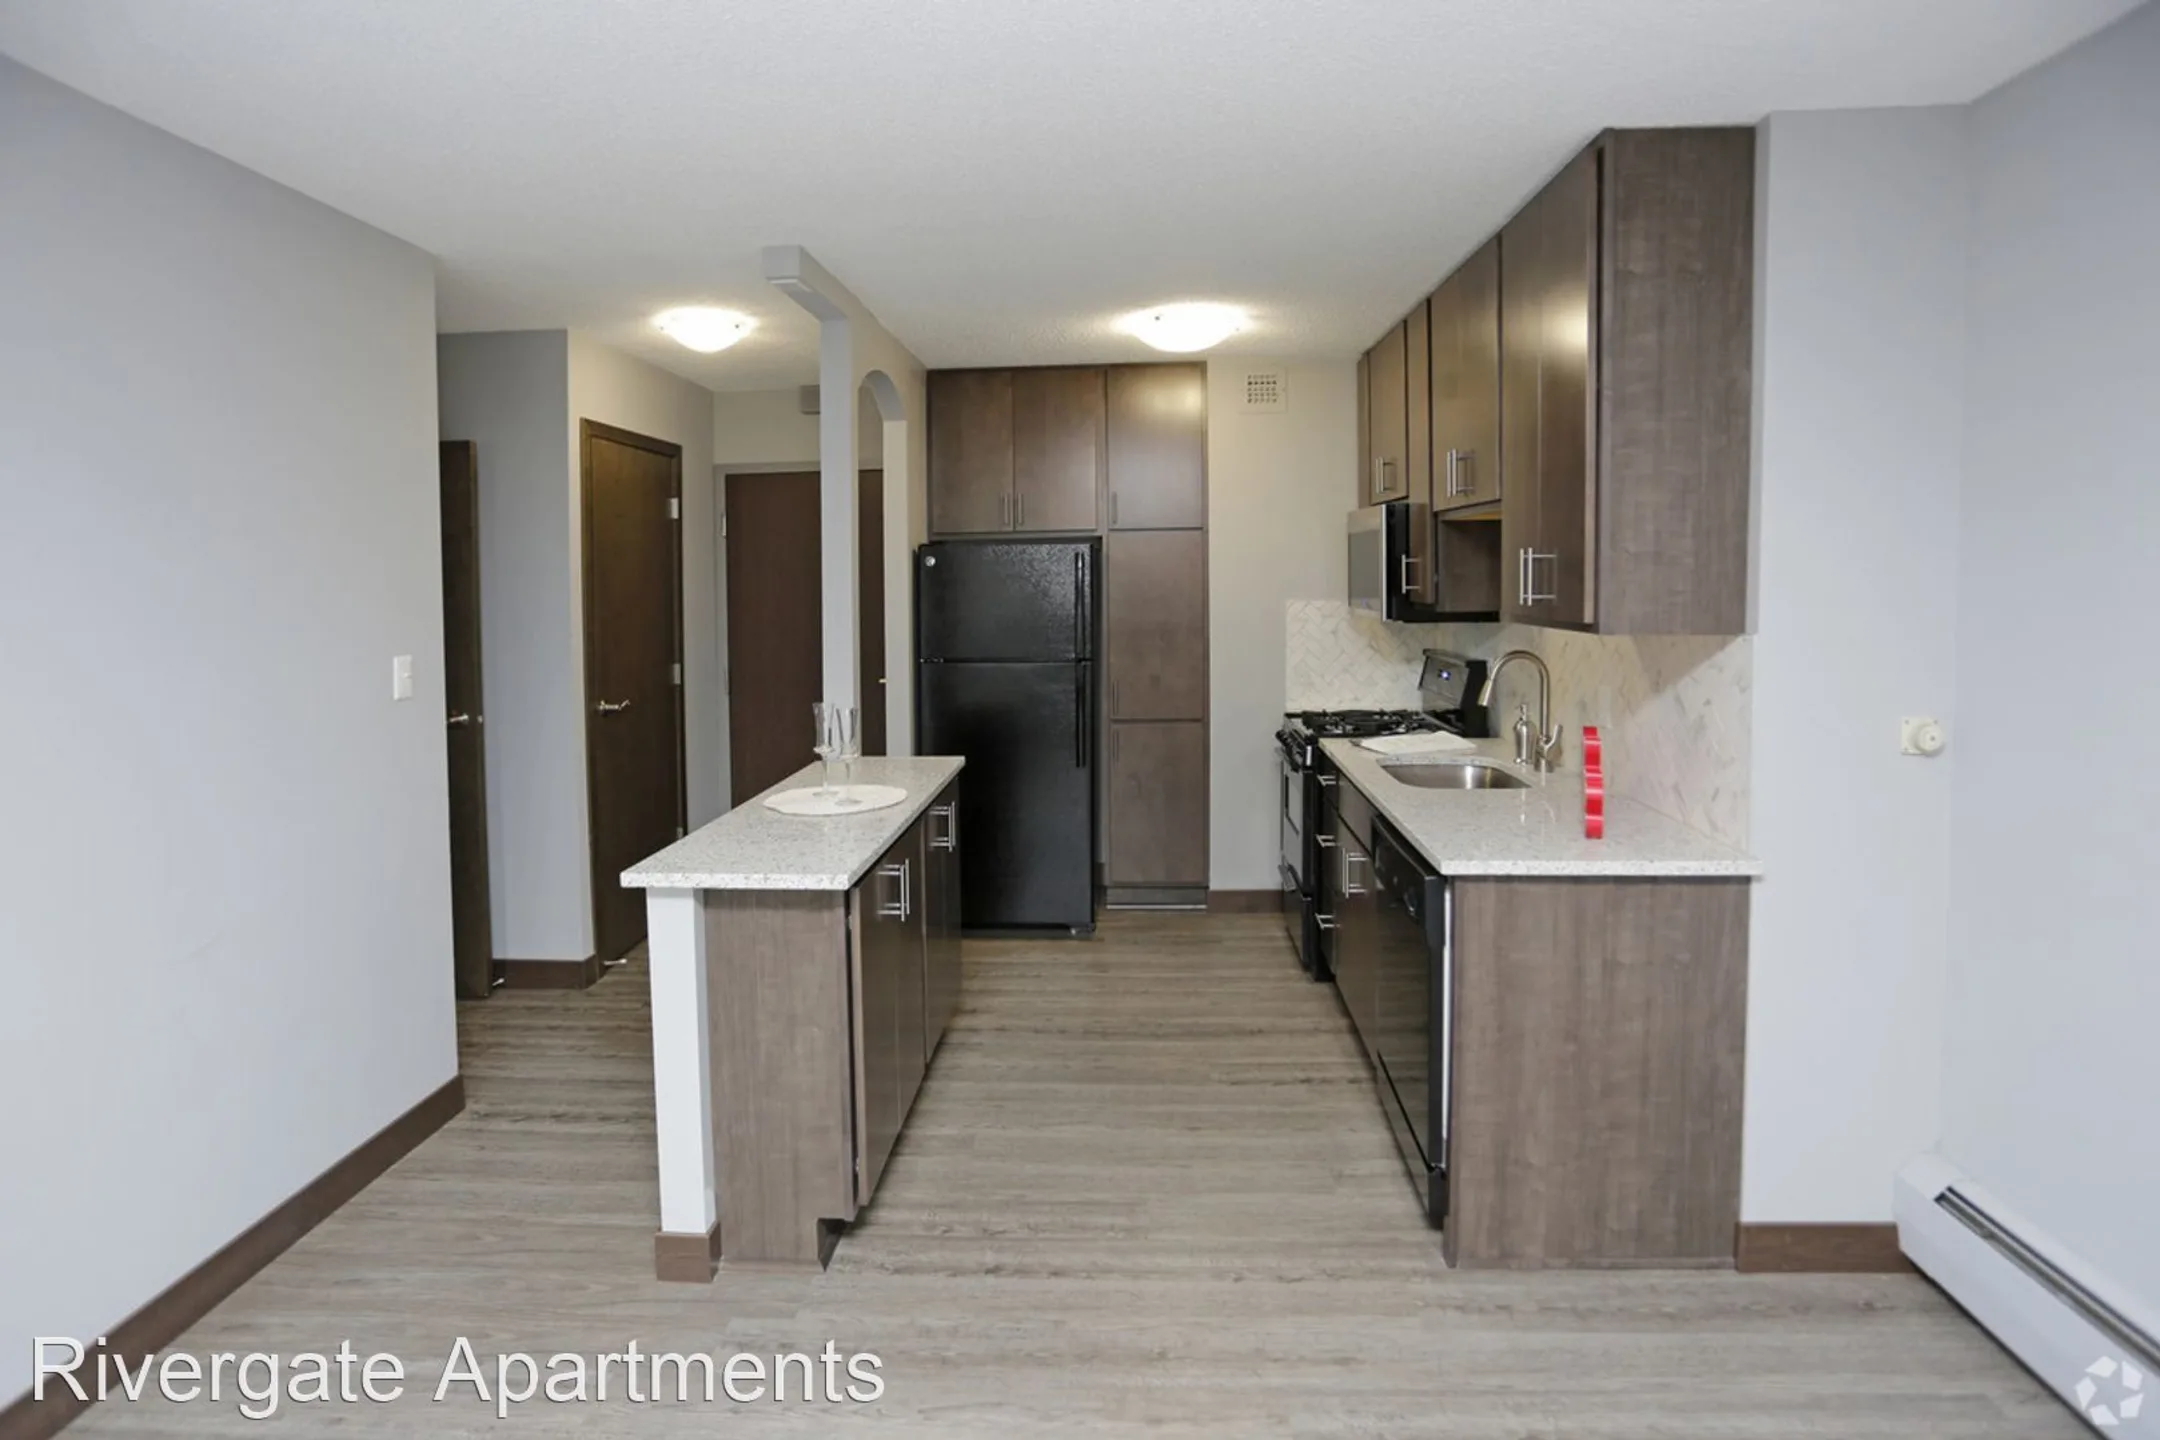 Kitchen - Rivergate Apartments - Minneapolis, MN